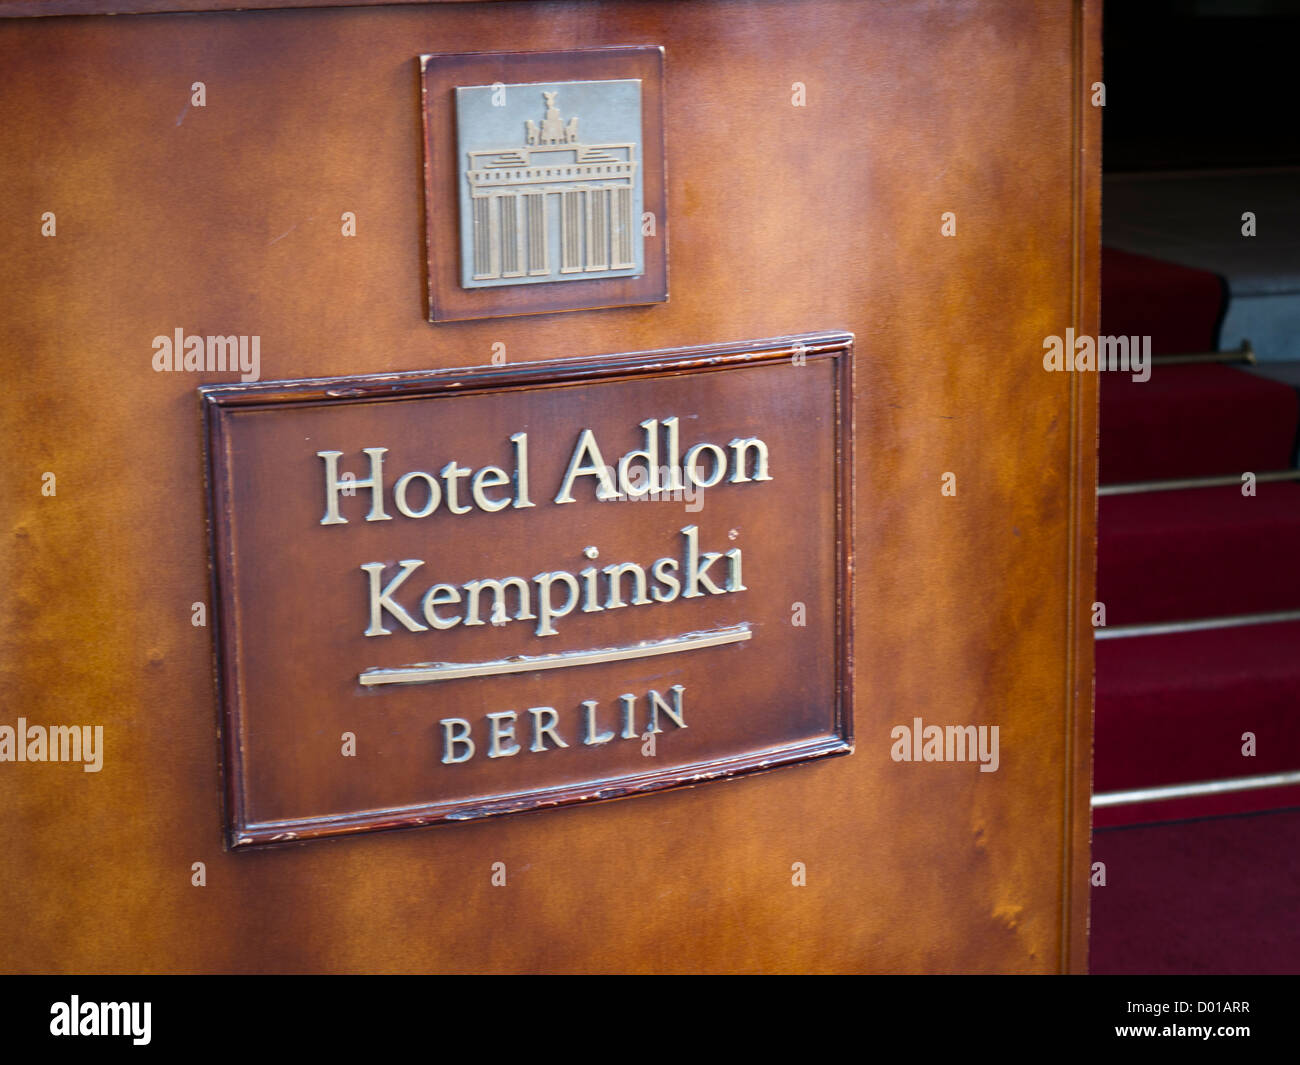 Hotel Adlon Kempinski in Berlin Germany Stock Photo